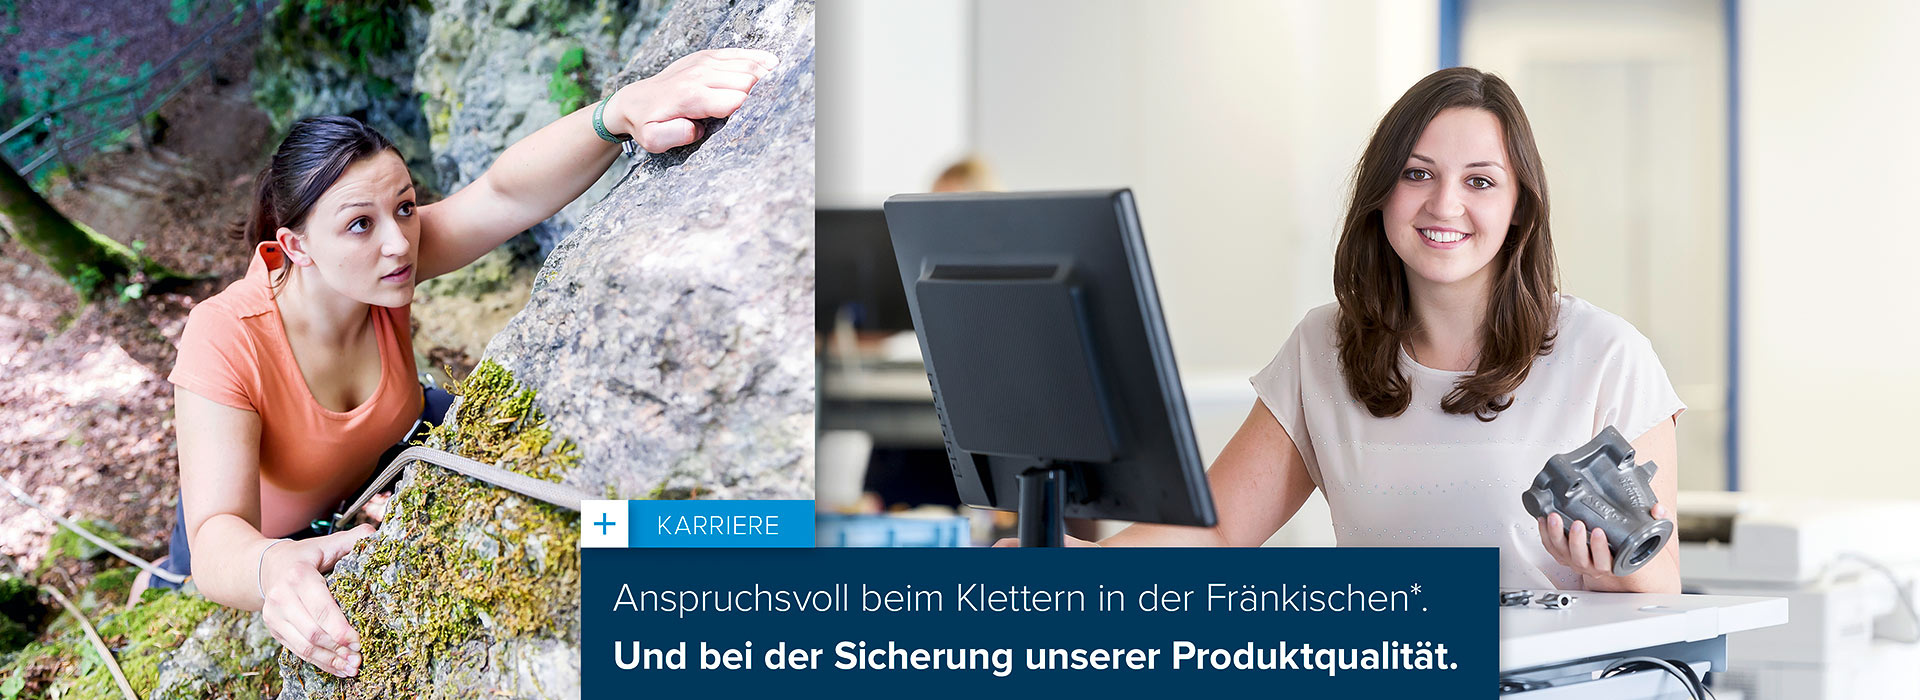 Employer Branding / Klubert + Schmidt